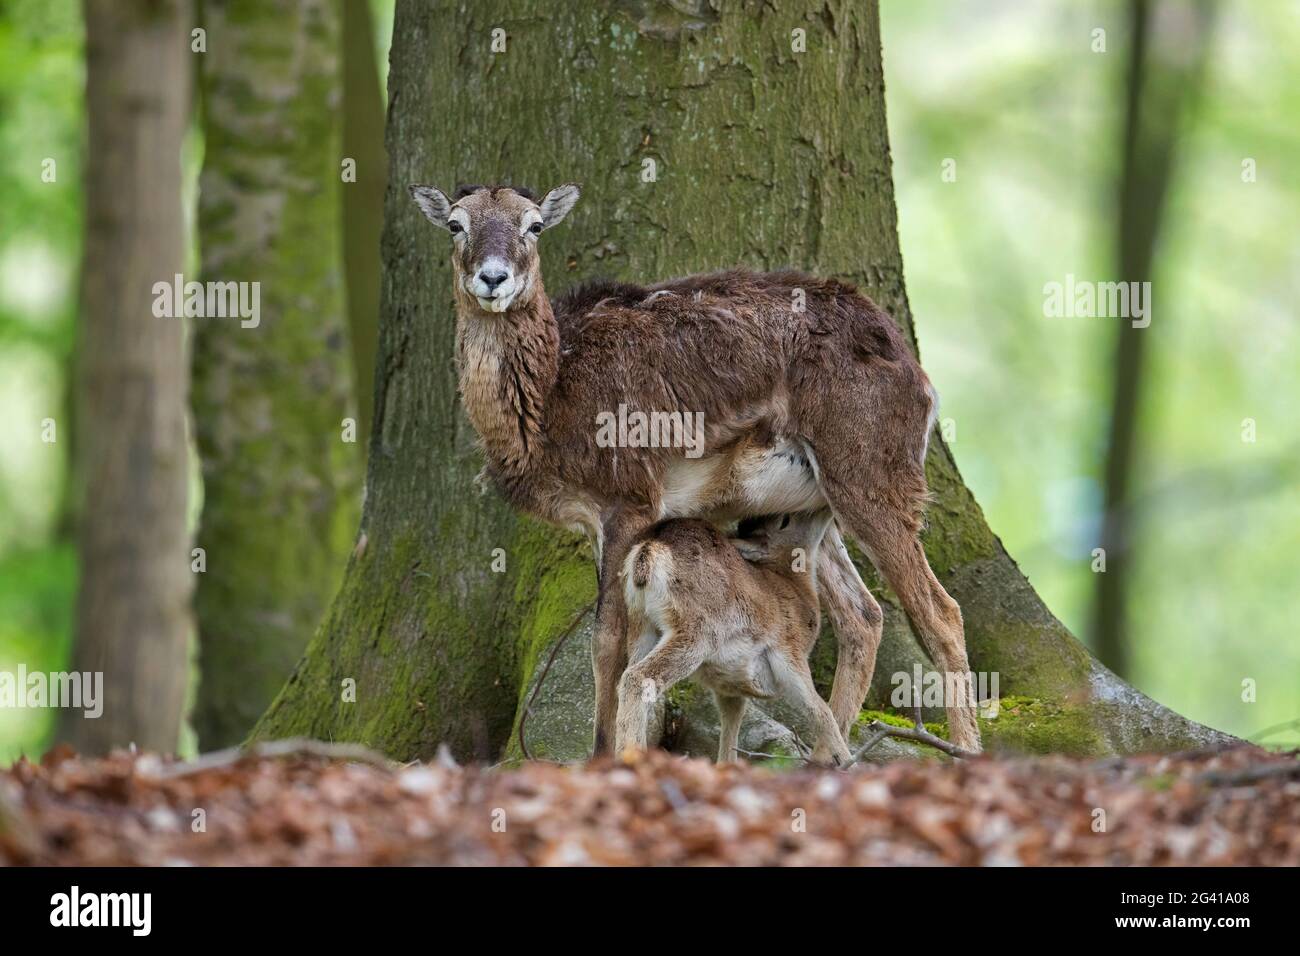 Mouflon européen (Ovis gmelini musimon / Ovis ammon / Ovis orientalis musimon) brebis / femelle avec agneau de lait en forêt au printemps Banque D'Images